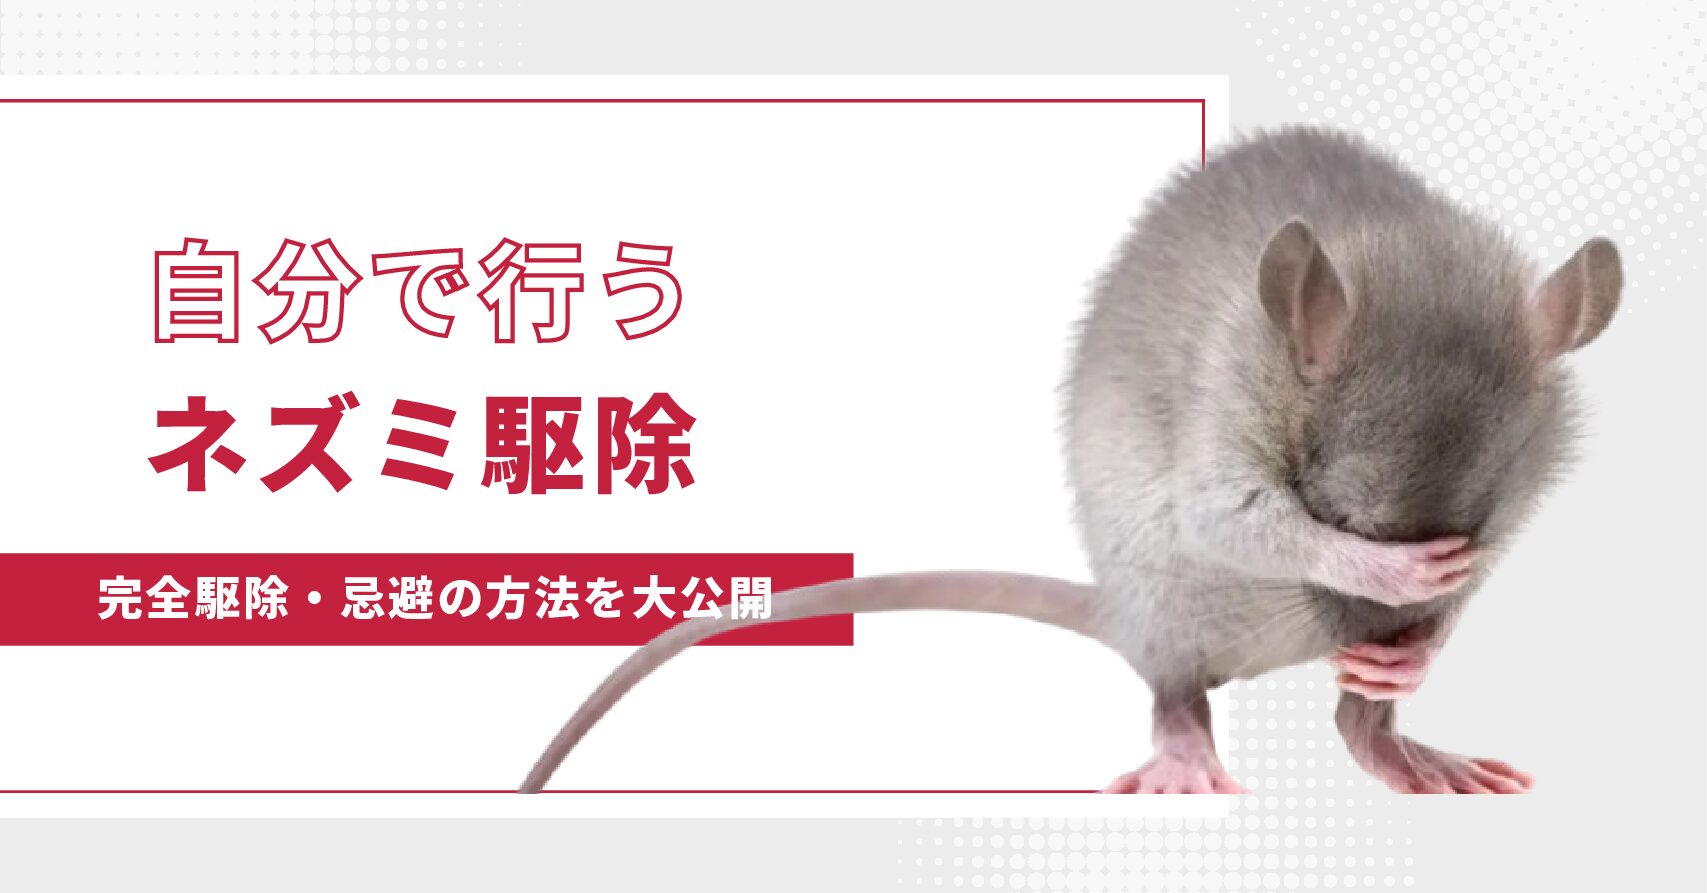 自分でできるネズミ駆除 – ネズミの習性と忌避方法